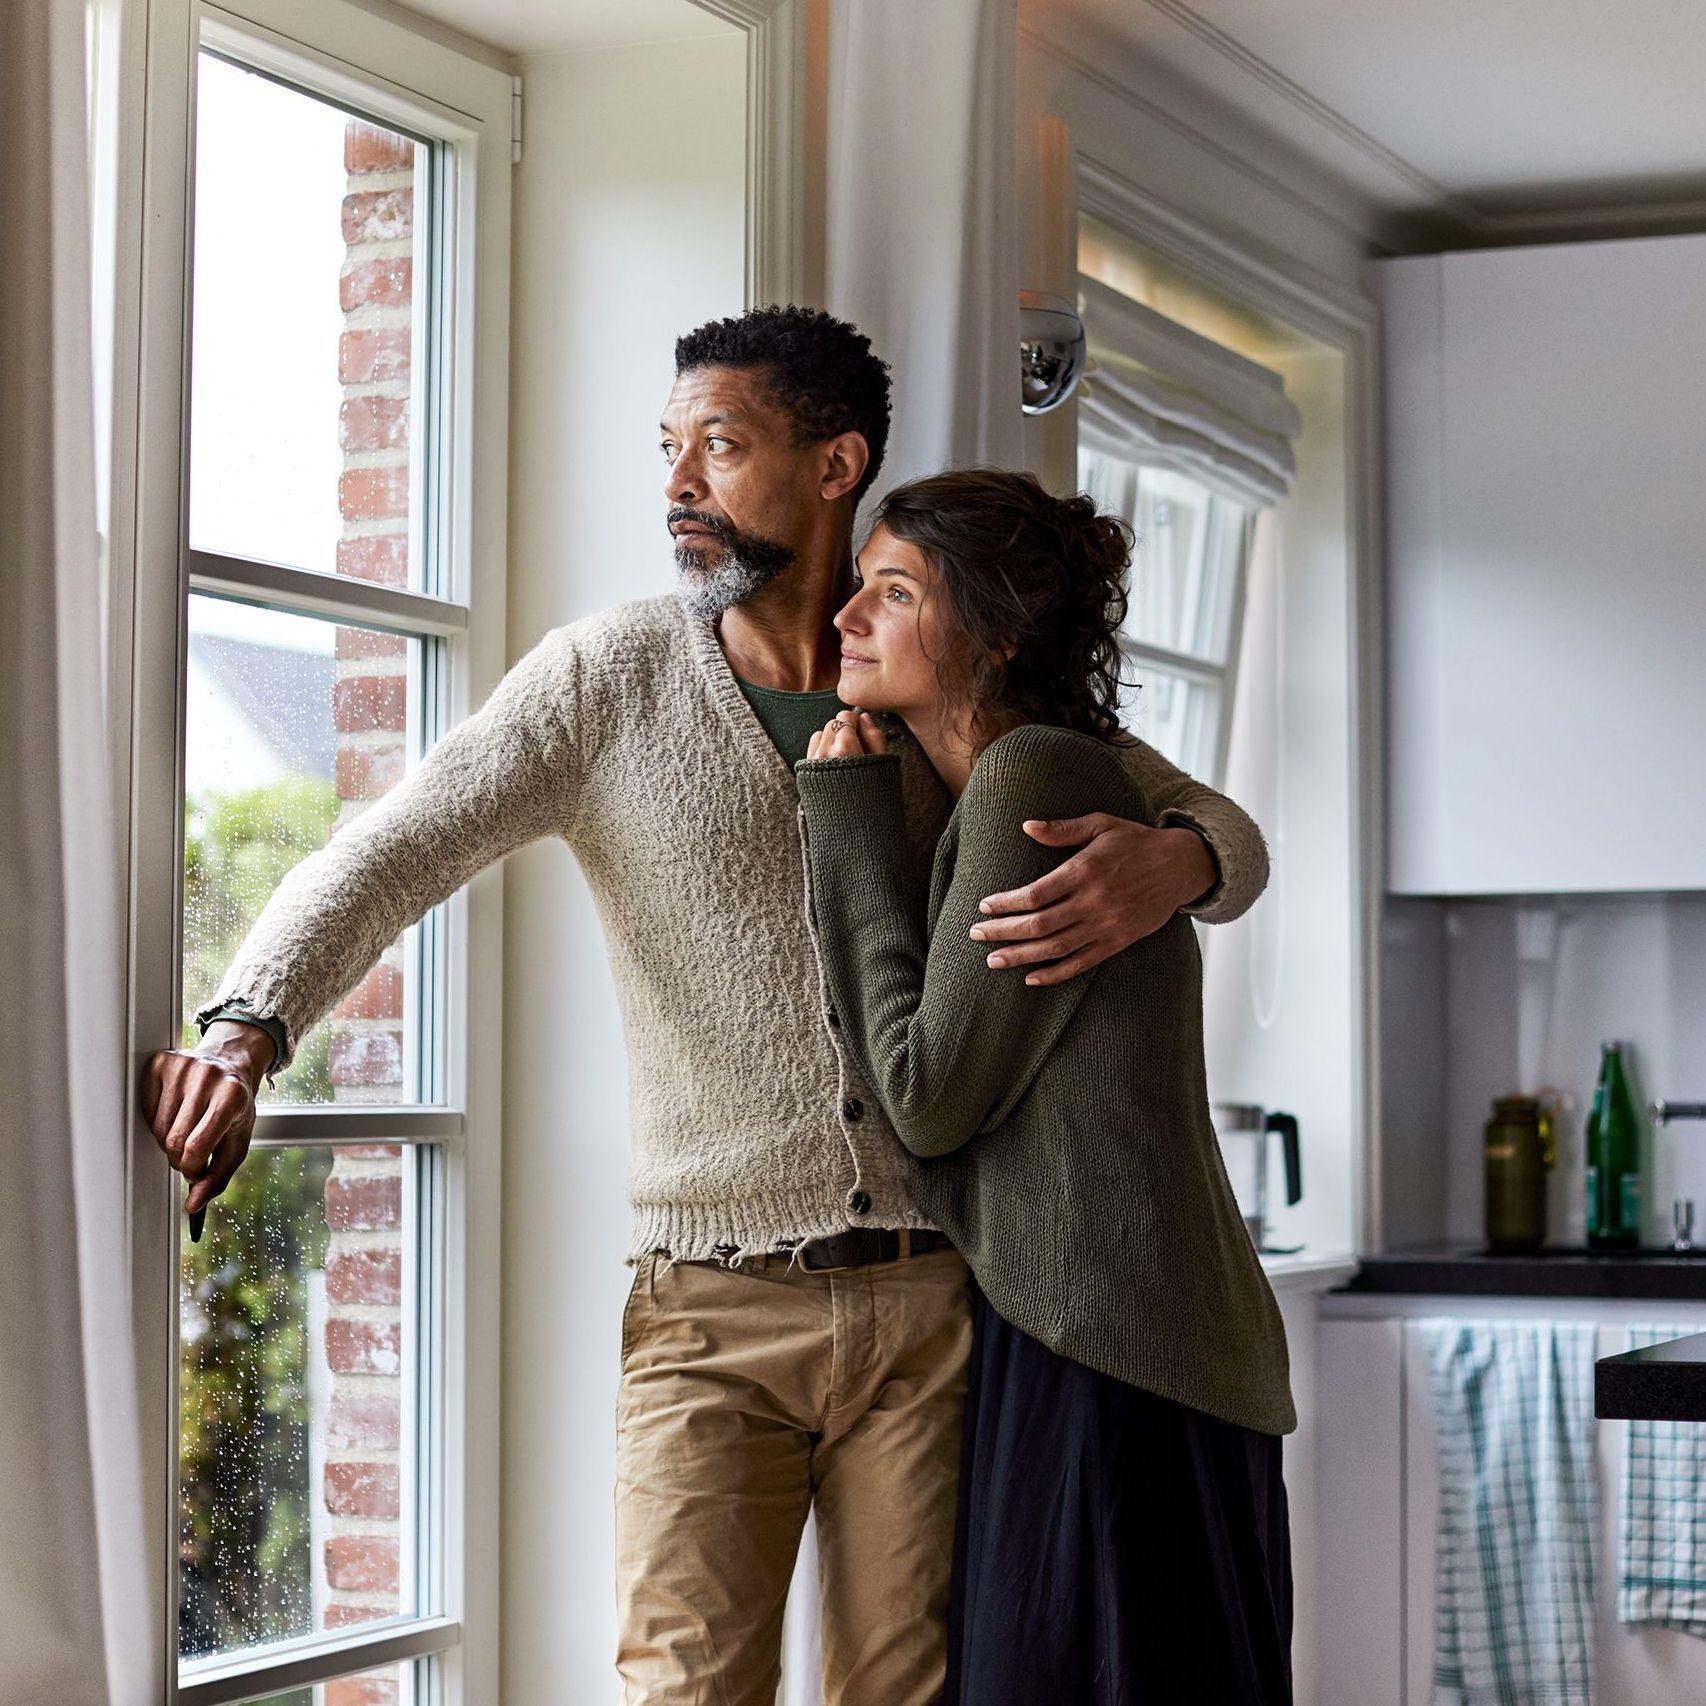 Ein sich umarmendes Paar mittleren Alters sieht zuhause nachdenklich, ernsthaft aus dem bodentiefen Fenster der Wohnküche.